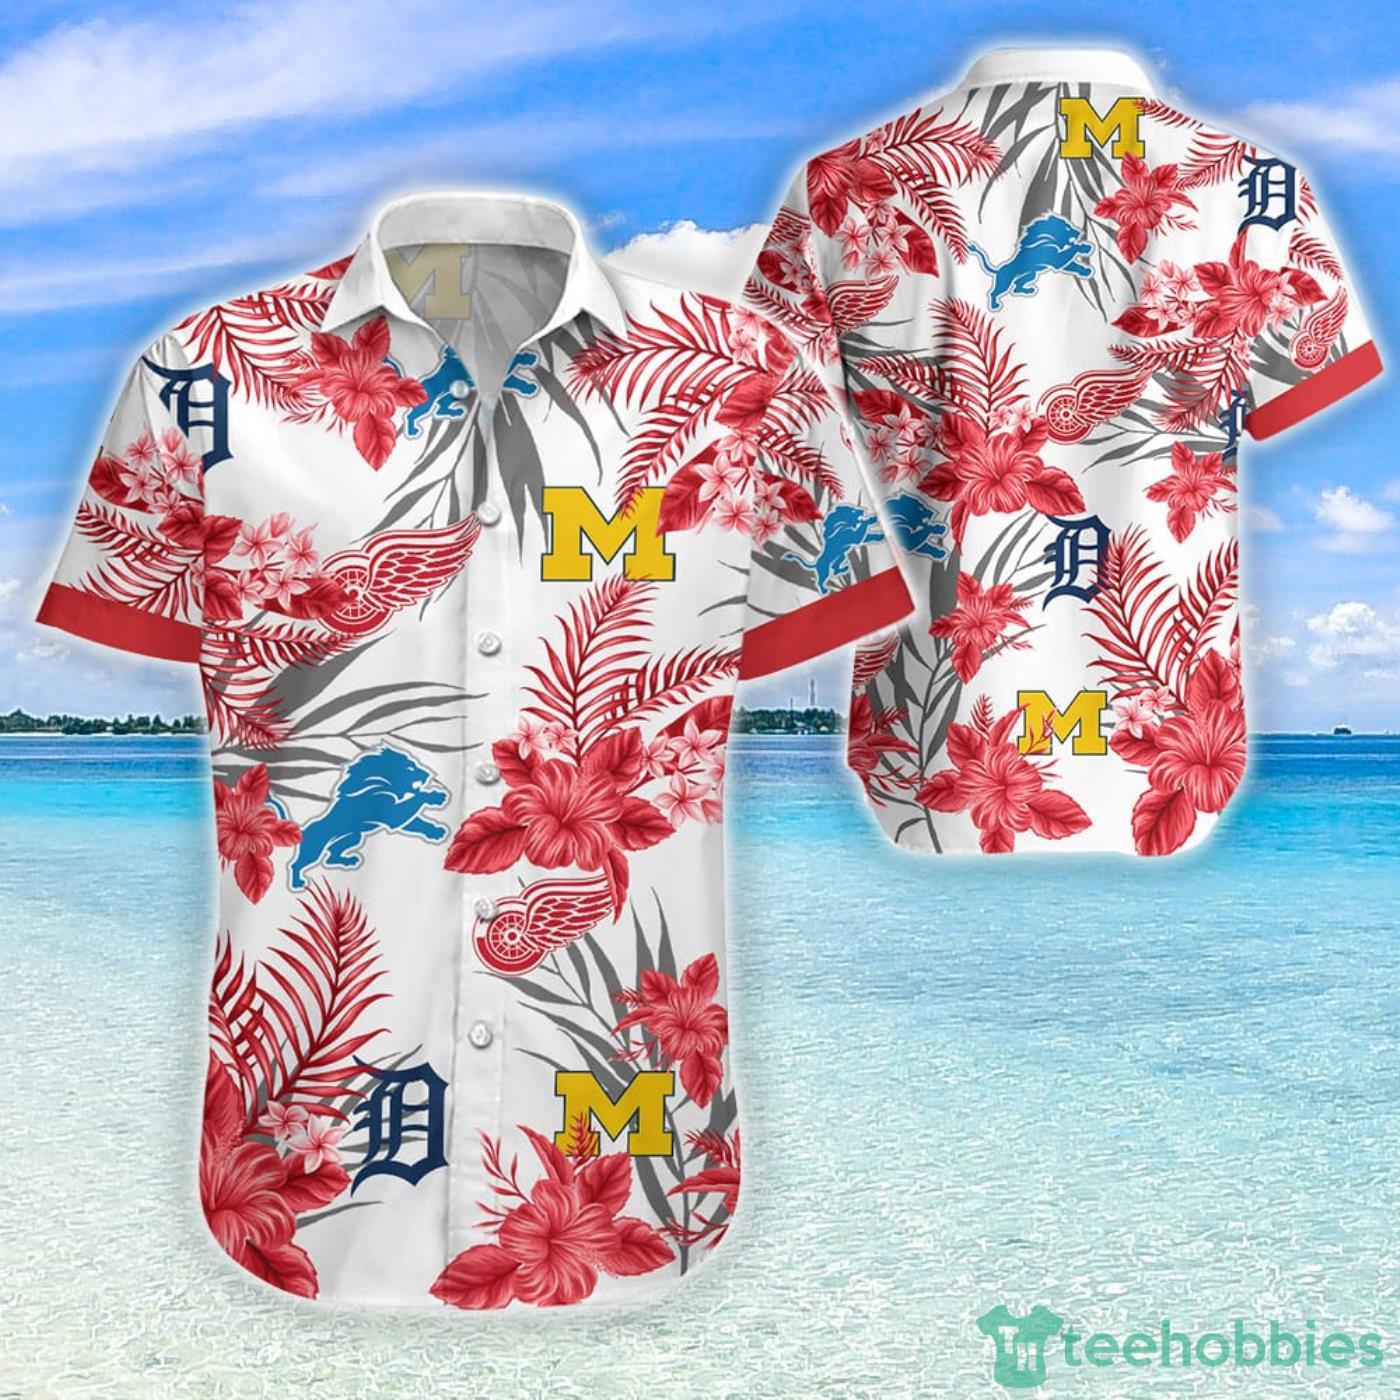 Red Hawaiian Shirts - Trendy Aloha